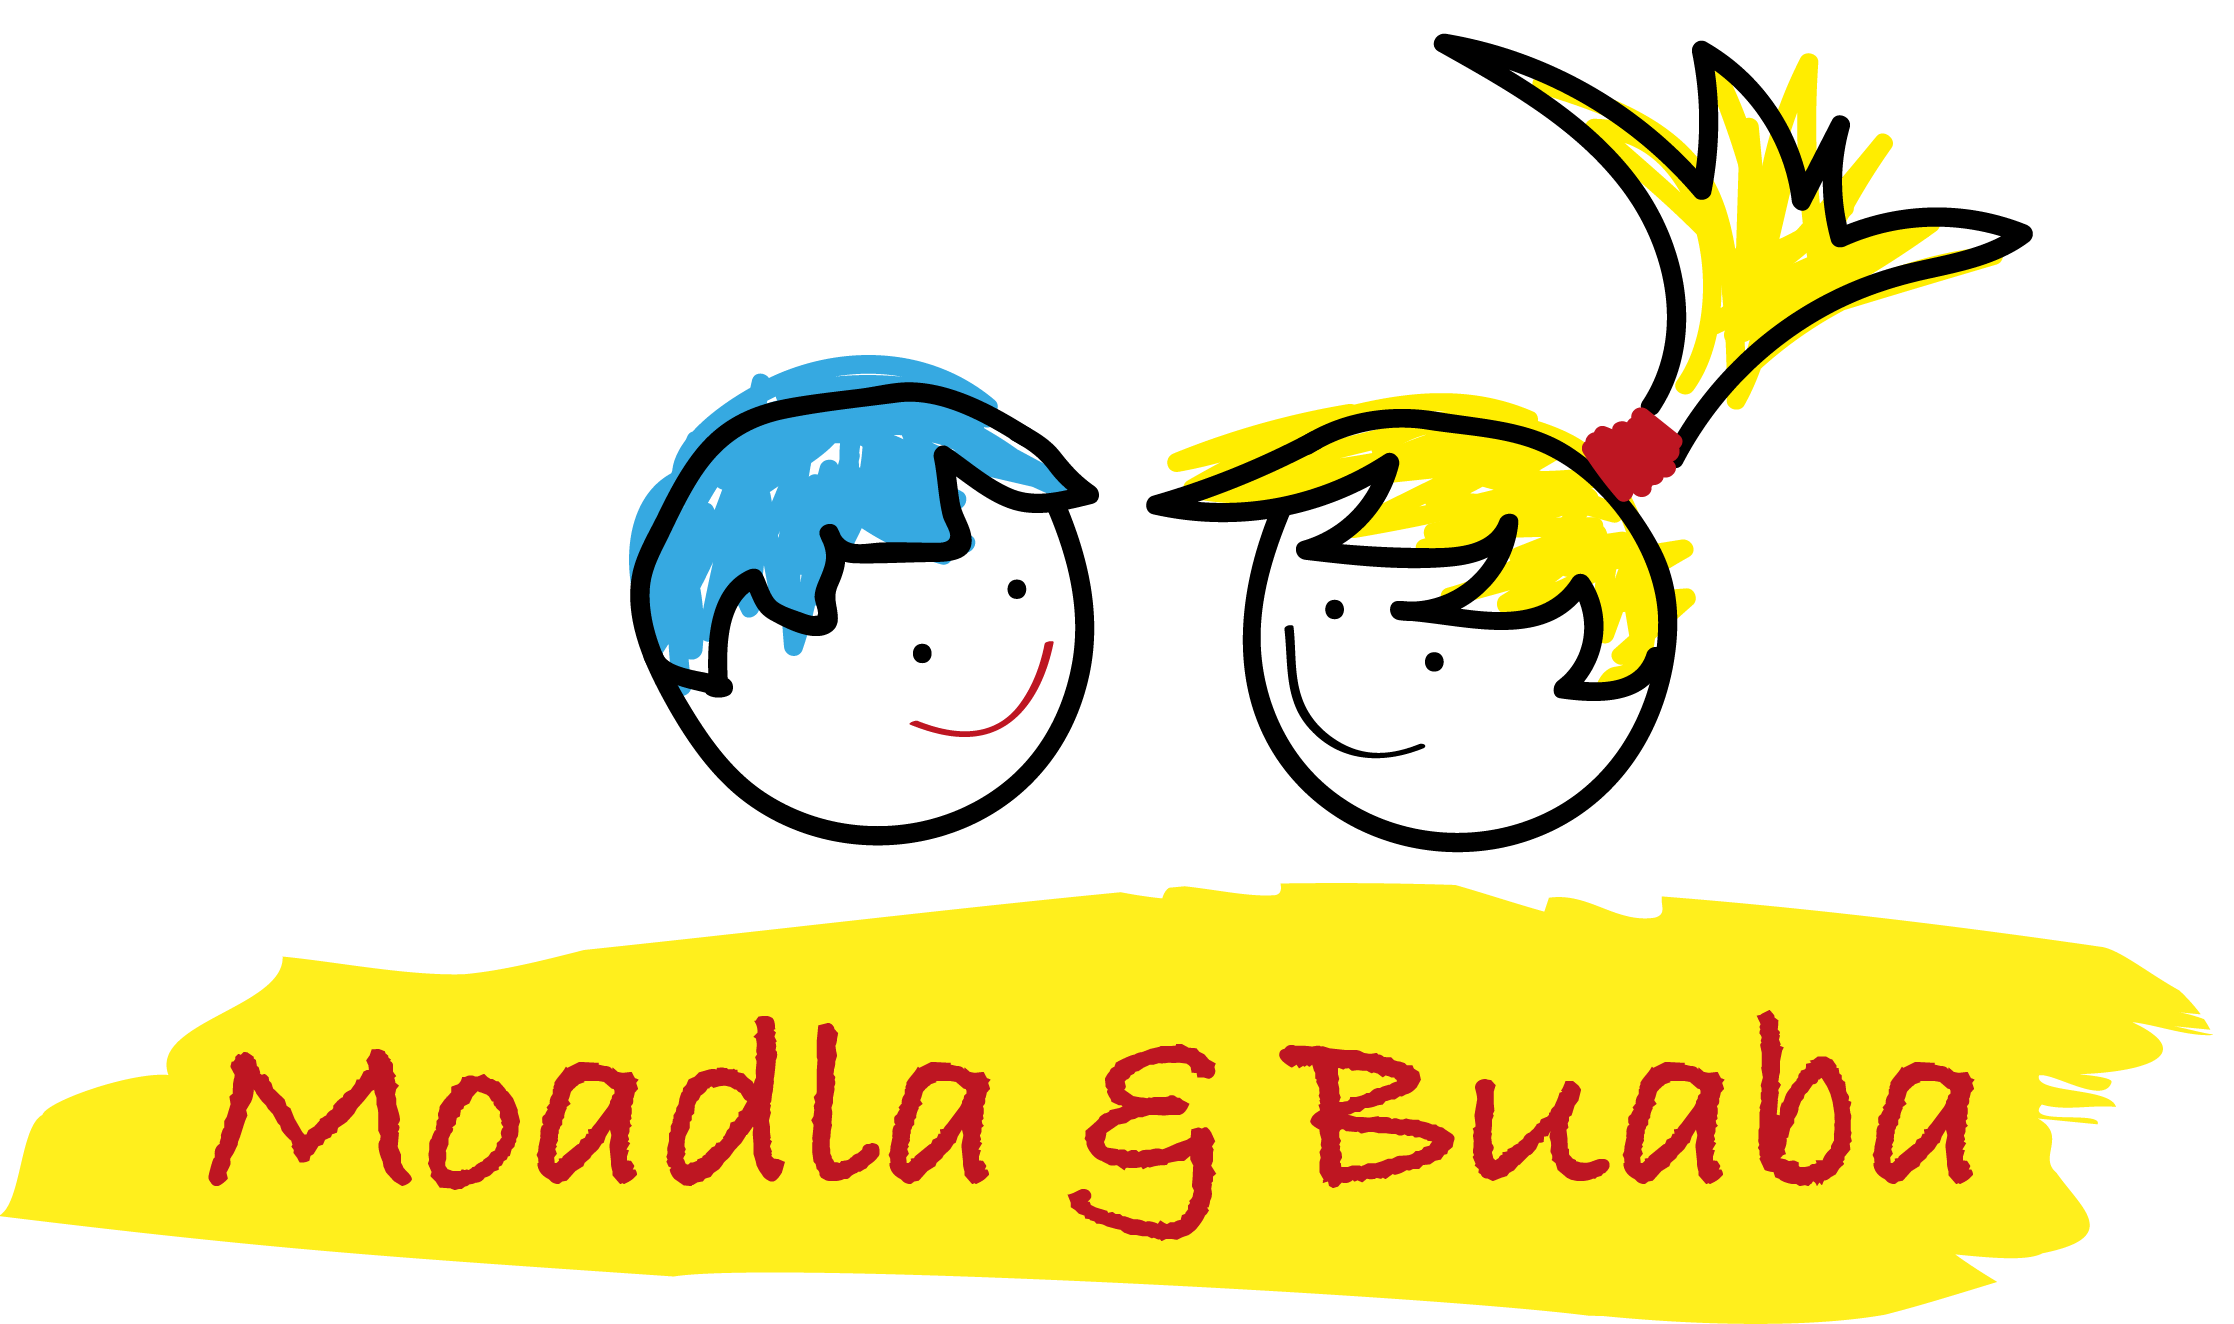 Moadla und Buabe, gemeinnütziger Verein, Logo mit Strichzeichnungen, Best practice Logo, the best logos 2019